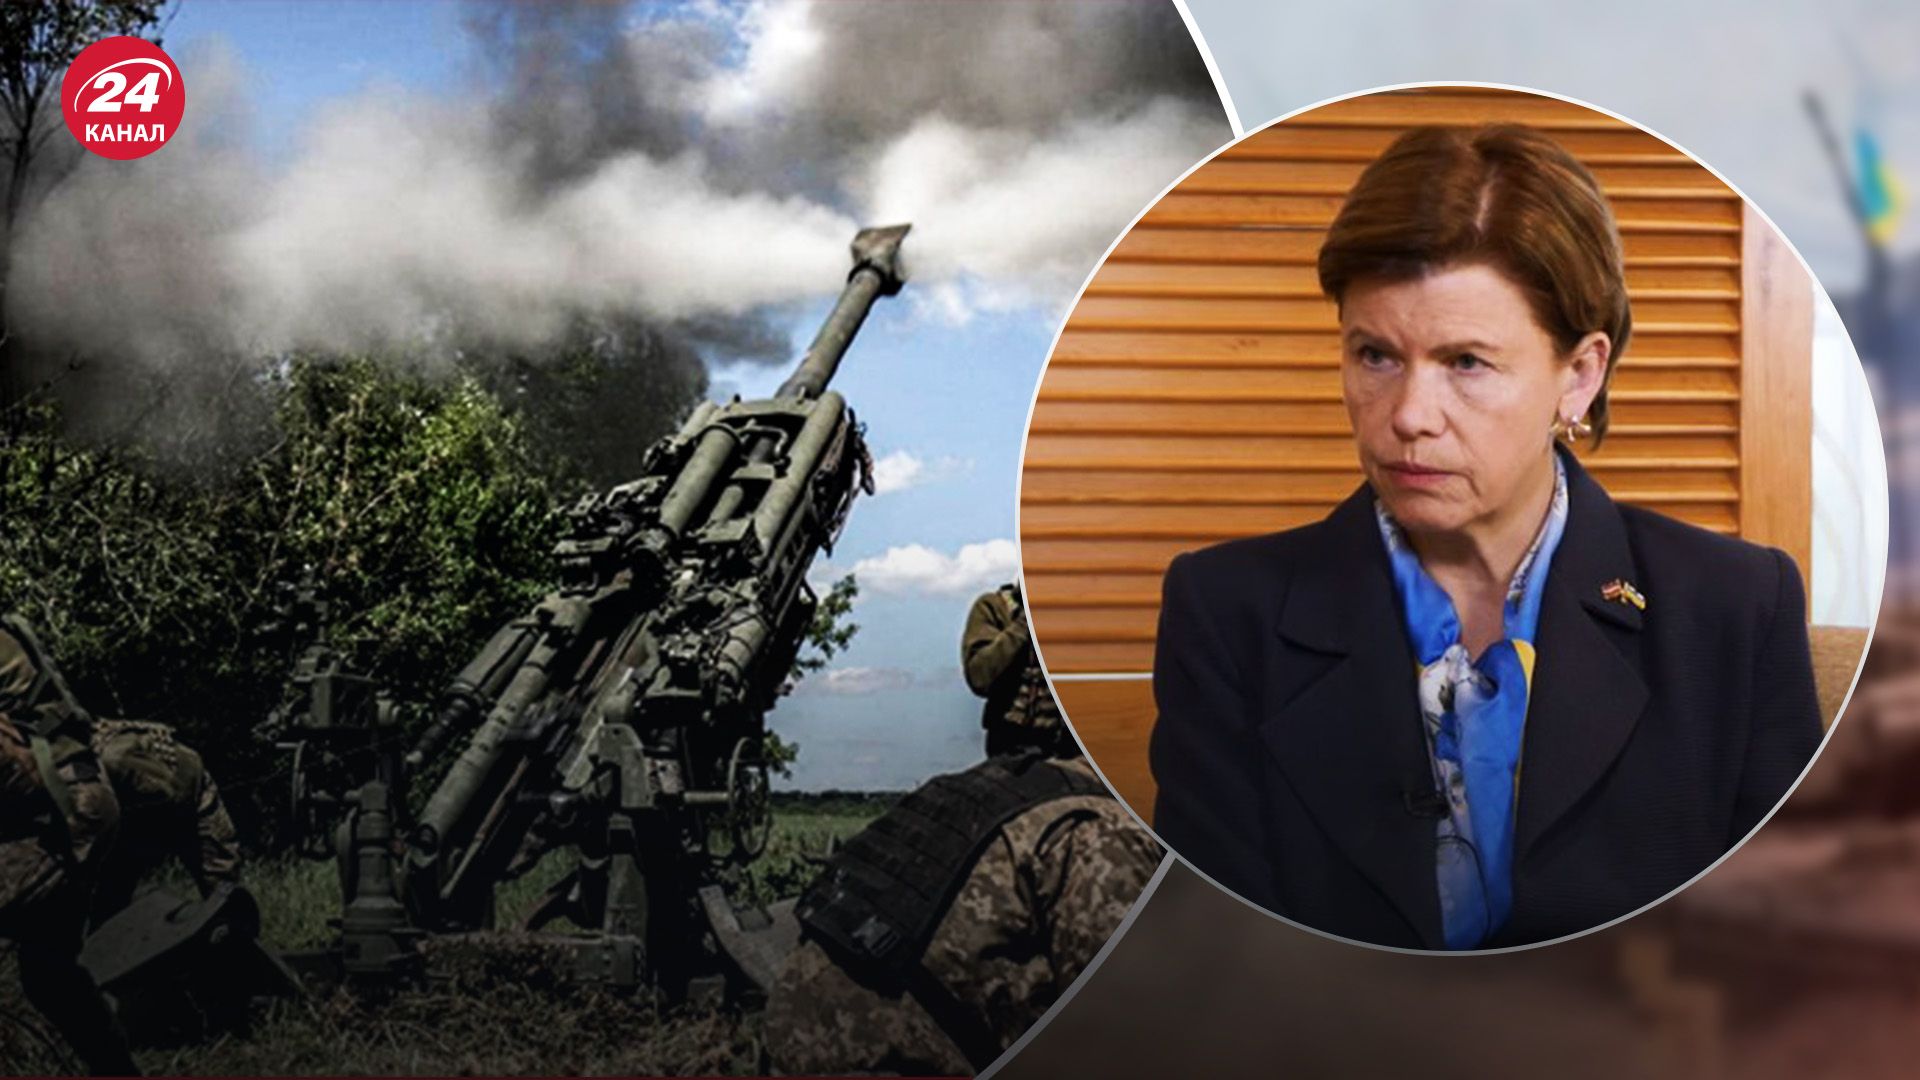 "Має право": у МЗС Латвії вважають, що Україна може бити по Росії - 24 Канал